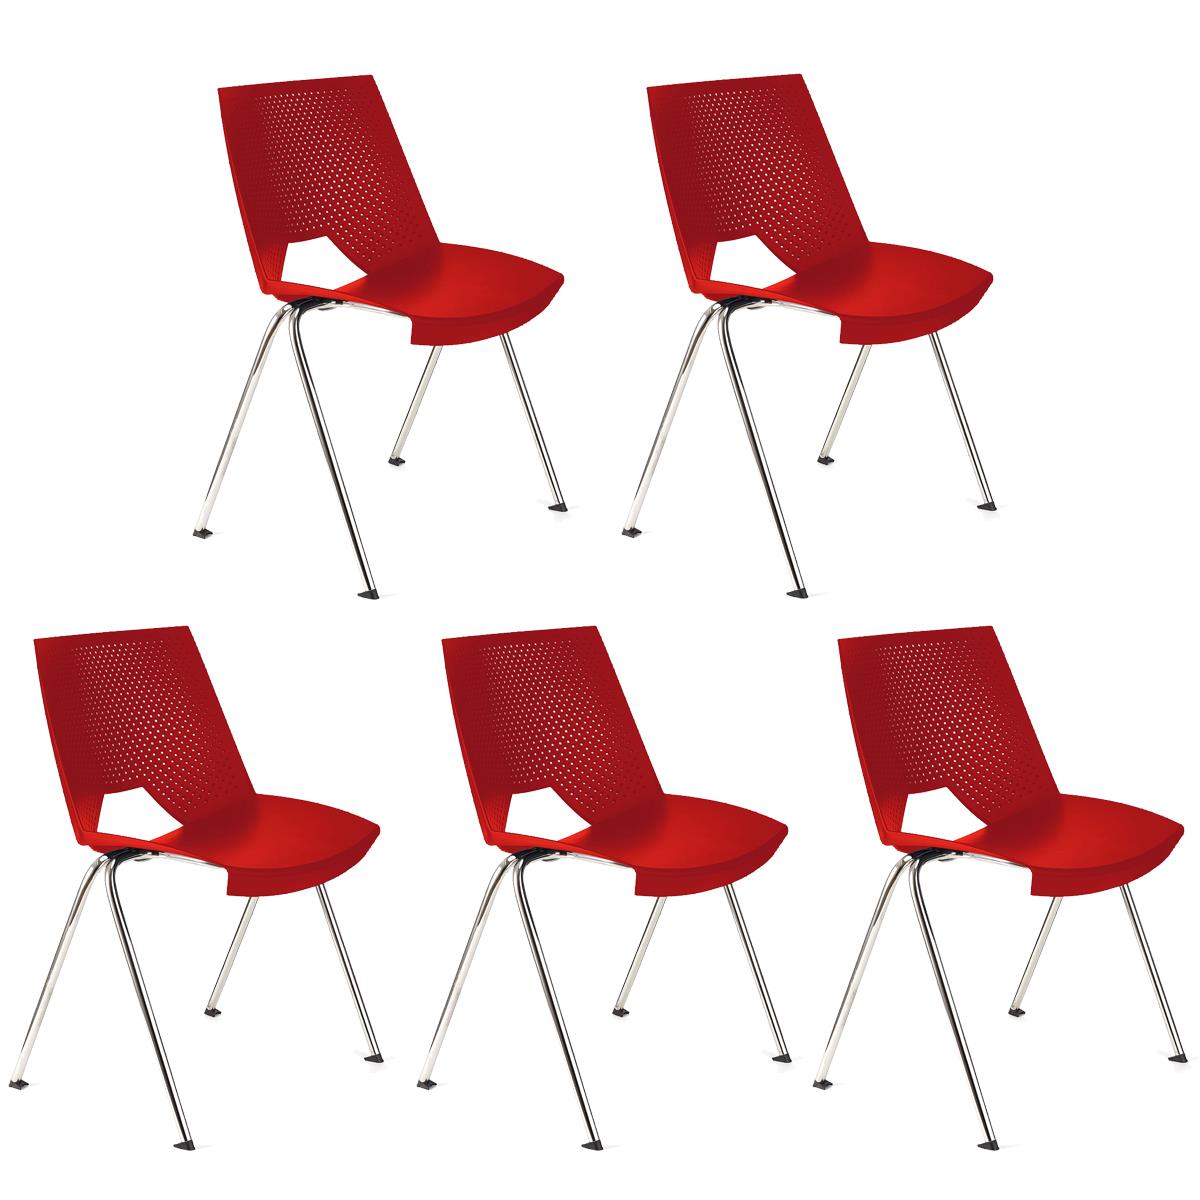 Lote 5 Cadeiras de Visita ENZO, Confortável e Prática, Empilhável, Cor Vermelho